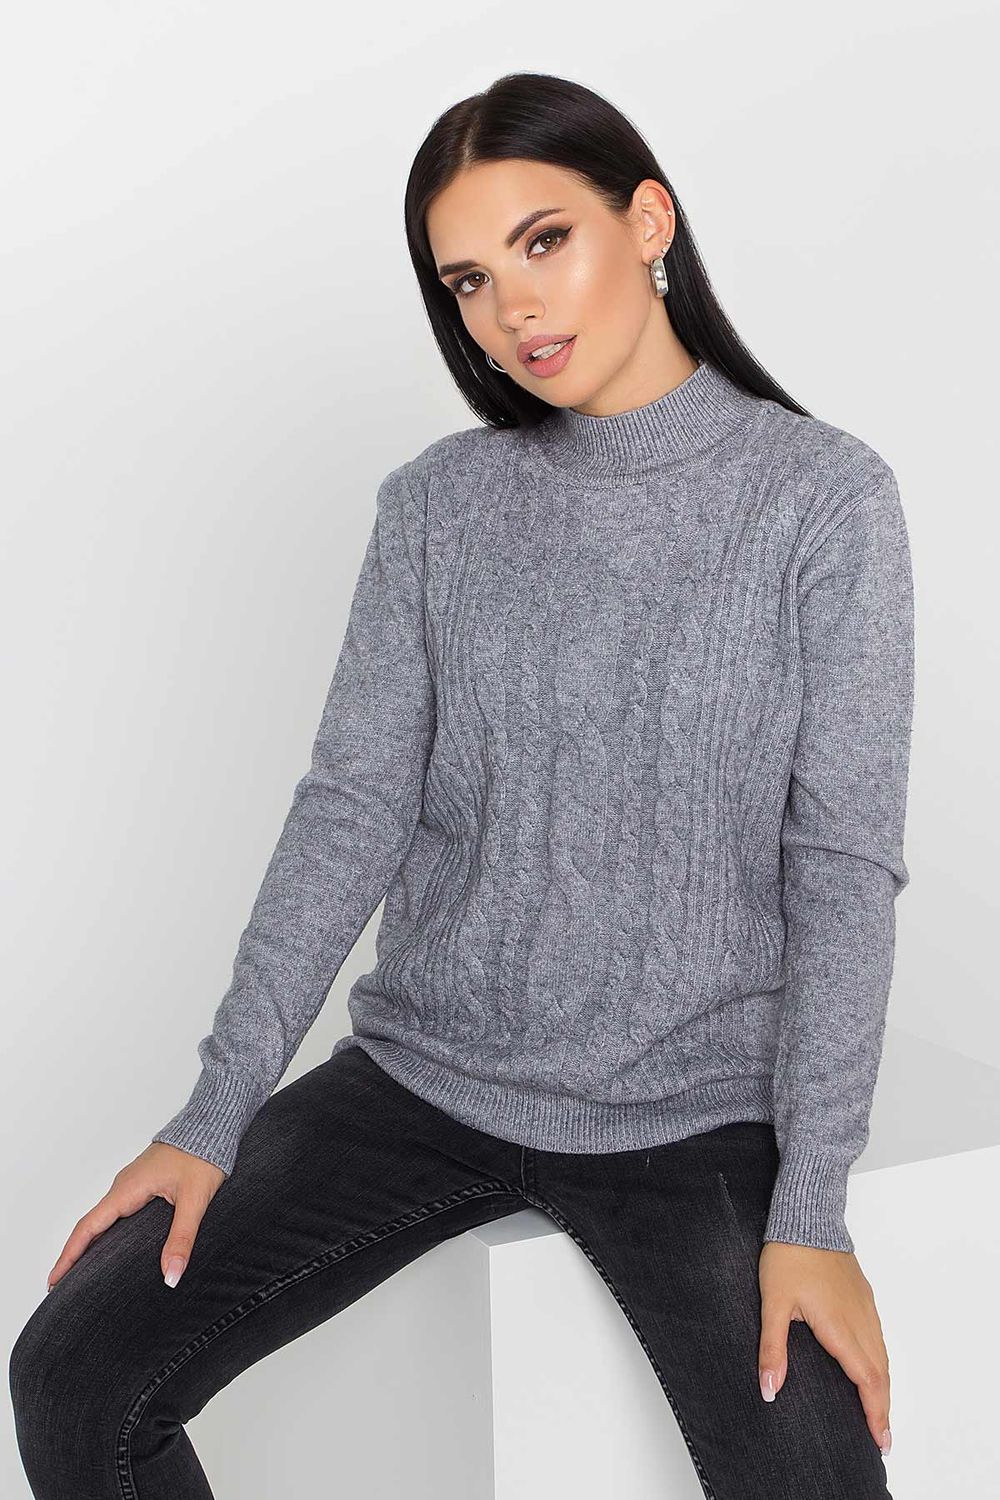 Жіночий в'язаний светр з візерунком коси сірого кольору - фото